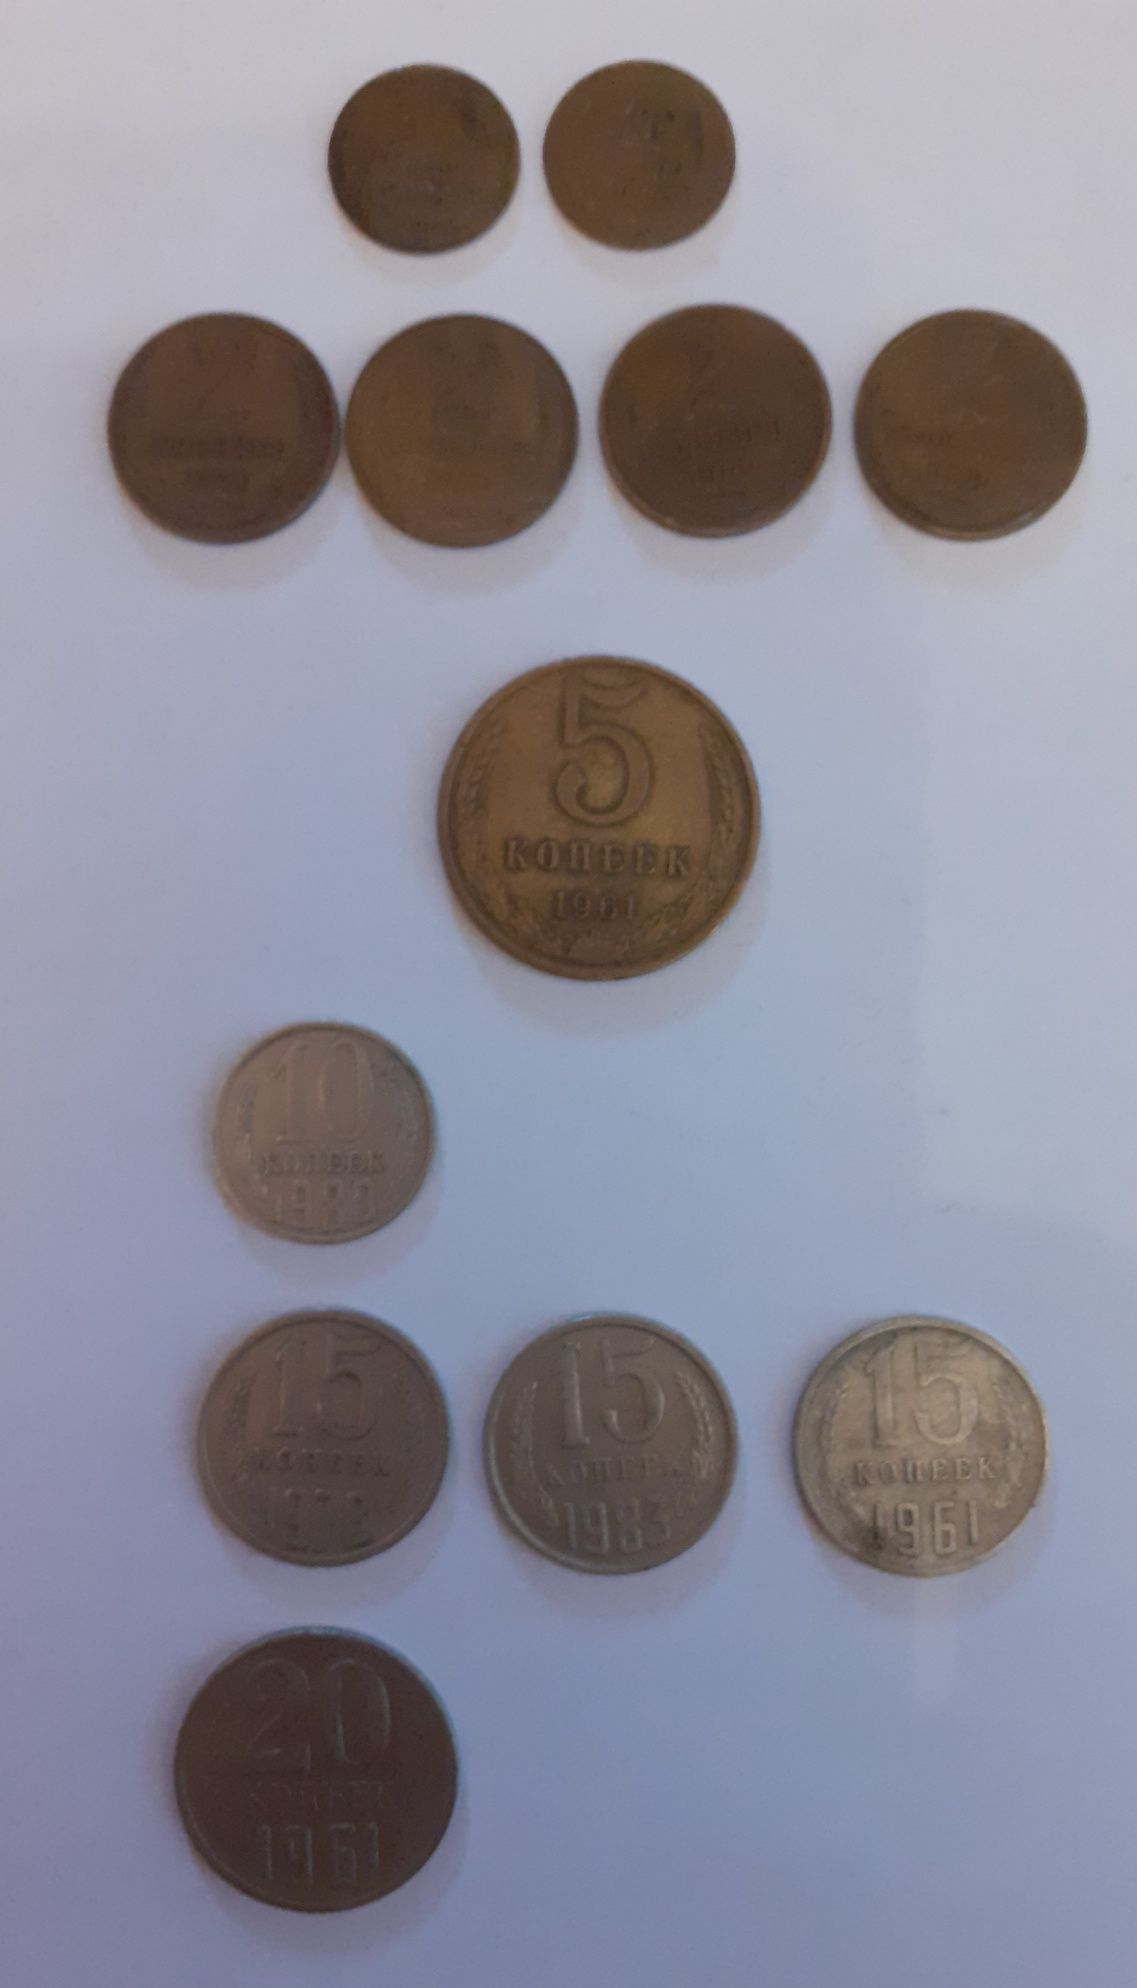 Monety z CCCP lata 1961/1985